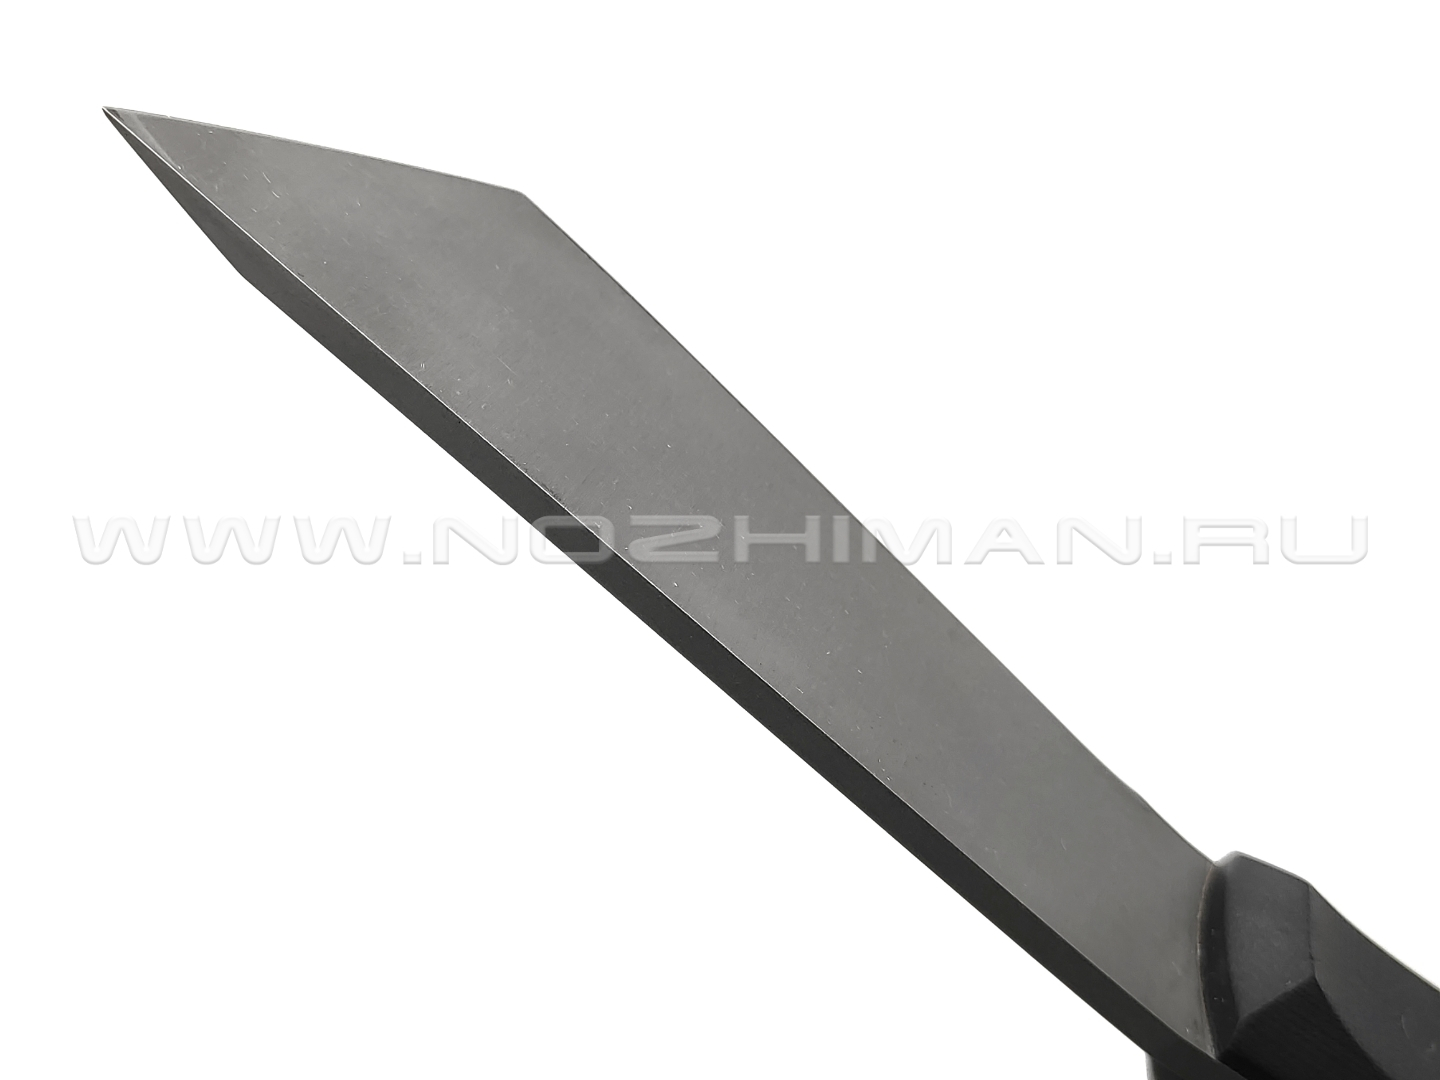 Волчий Век нож НДК 11 сталь N690 WA blackwash, рукоять G10 black